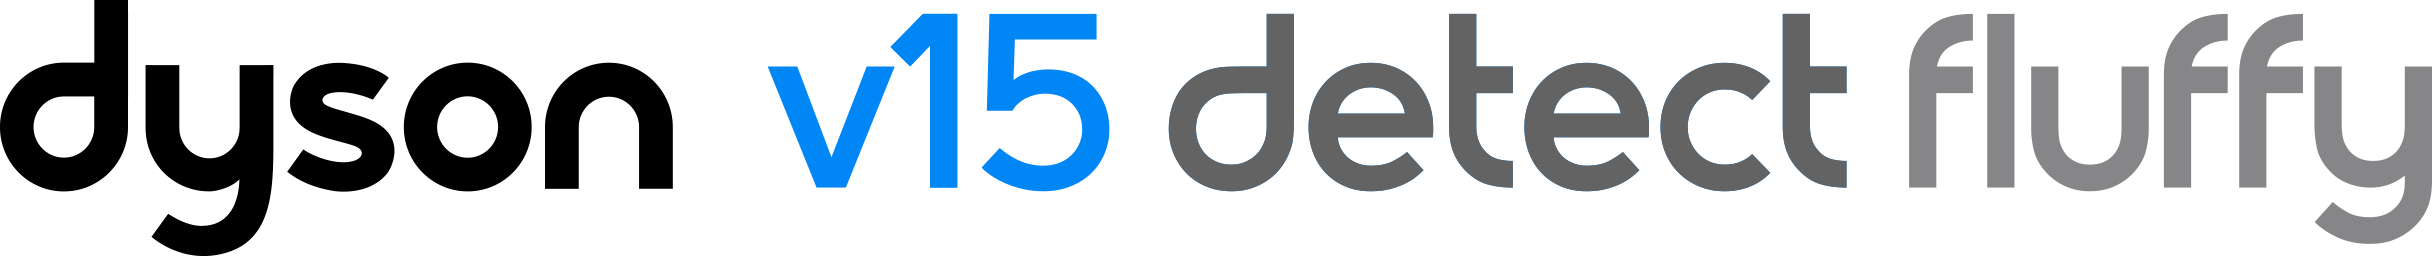 Dyson V15 Detect Fluffy logo